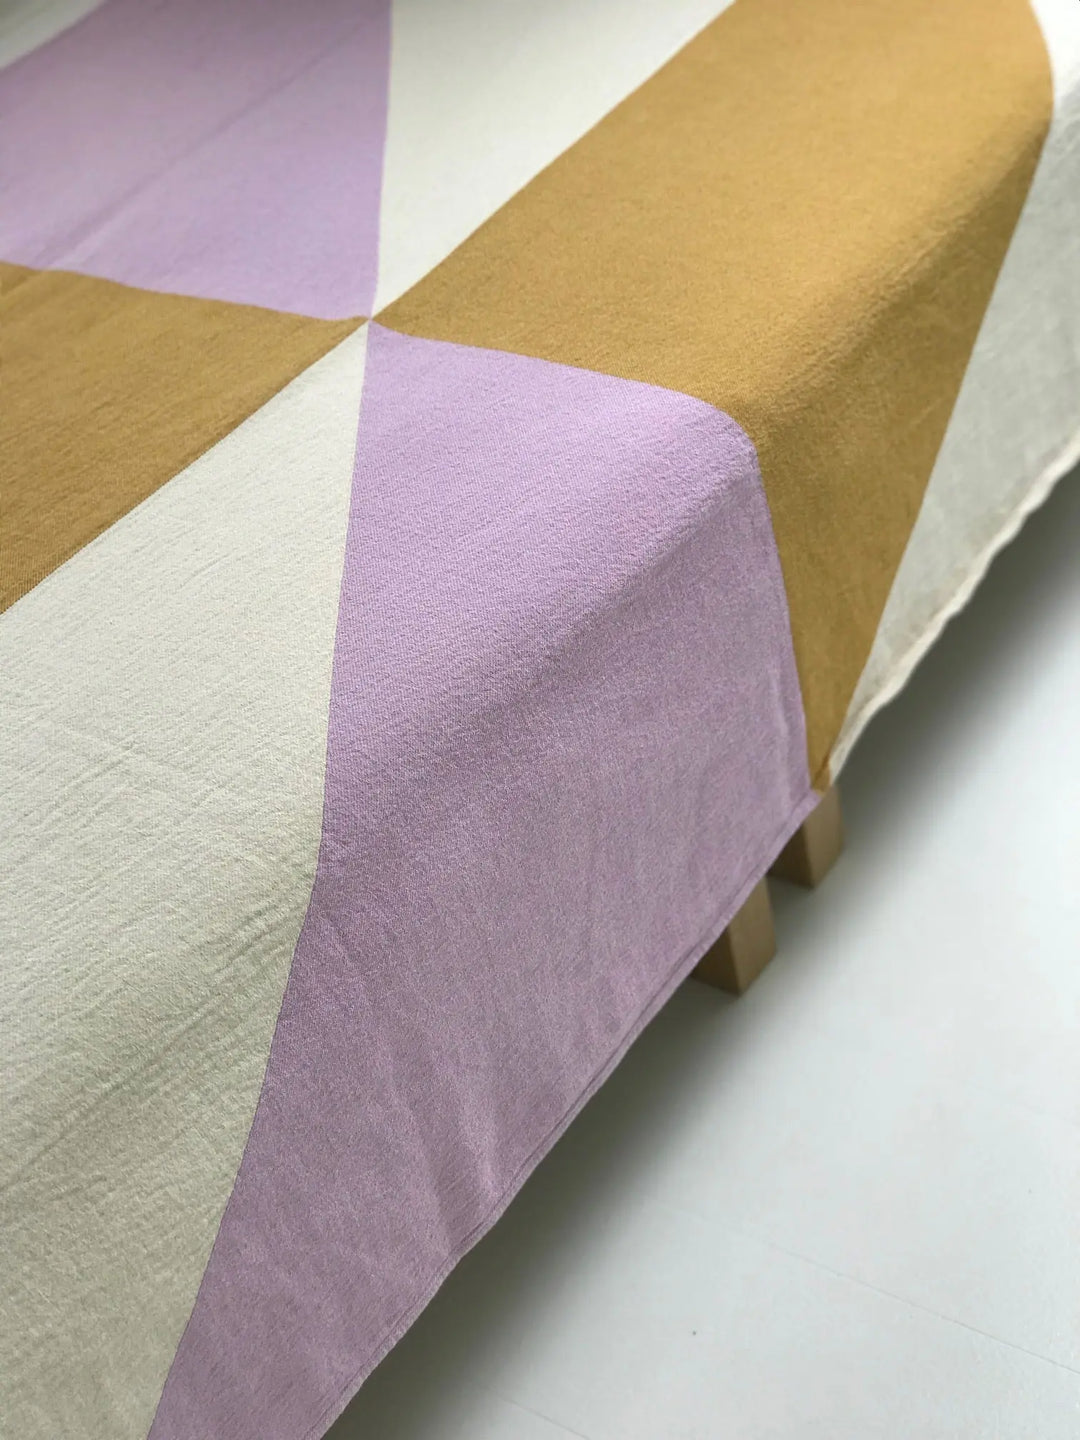 JOU Plaid rosa/brun | 130 x 180cm Jou Quilts